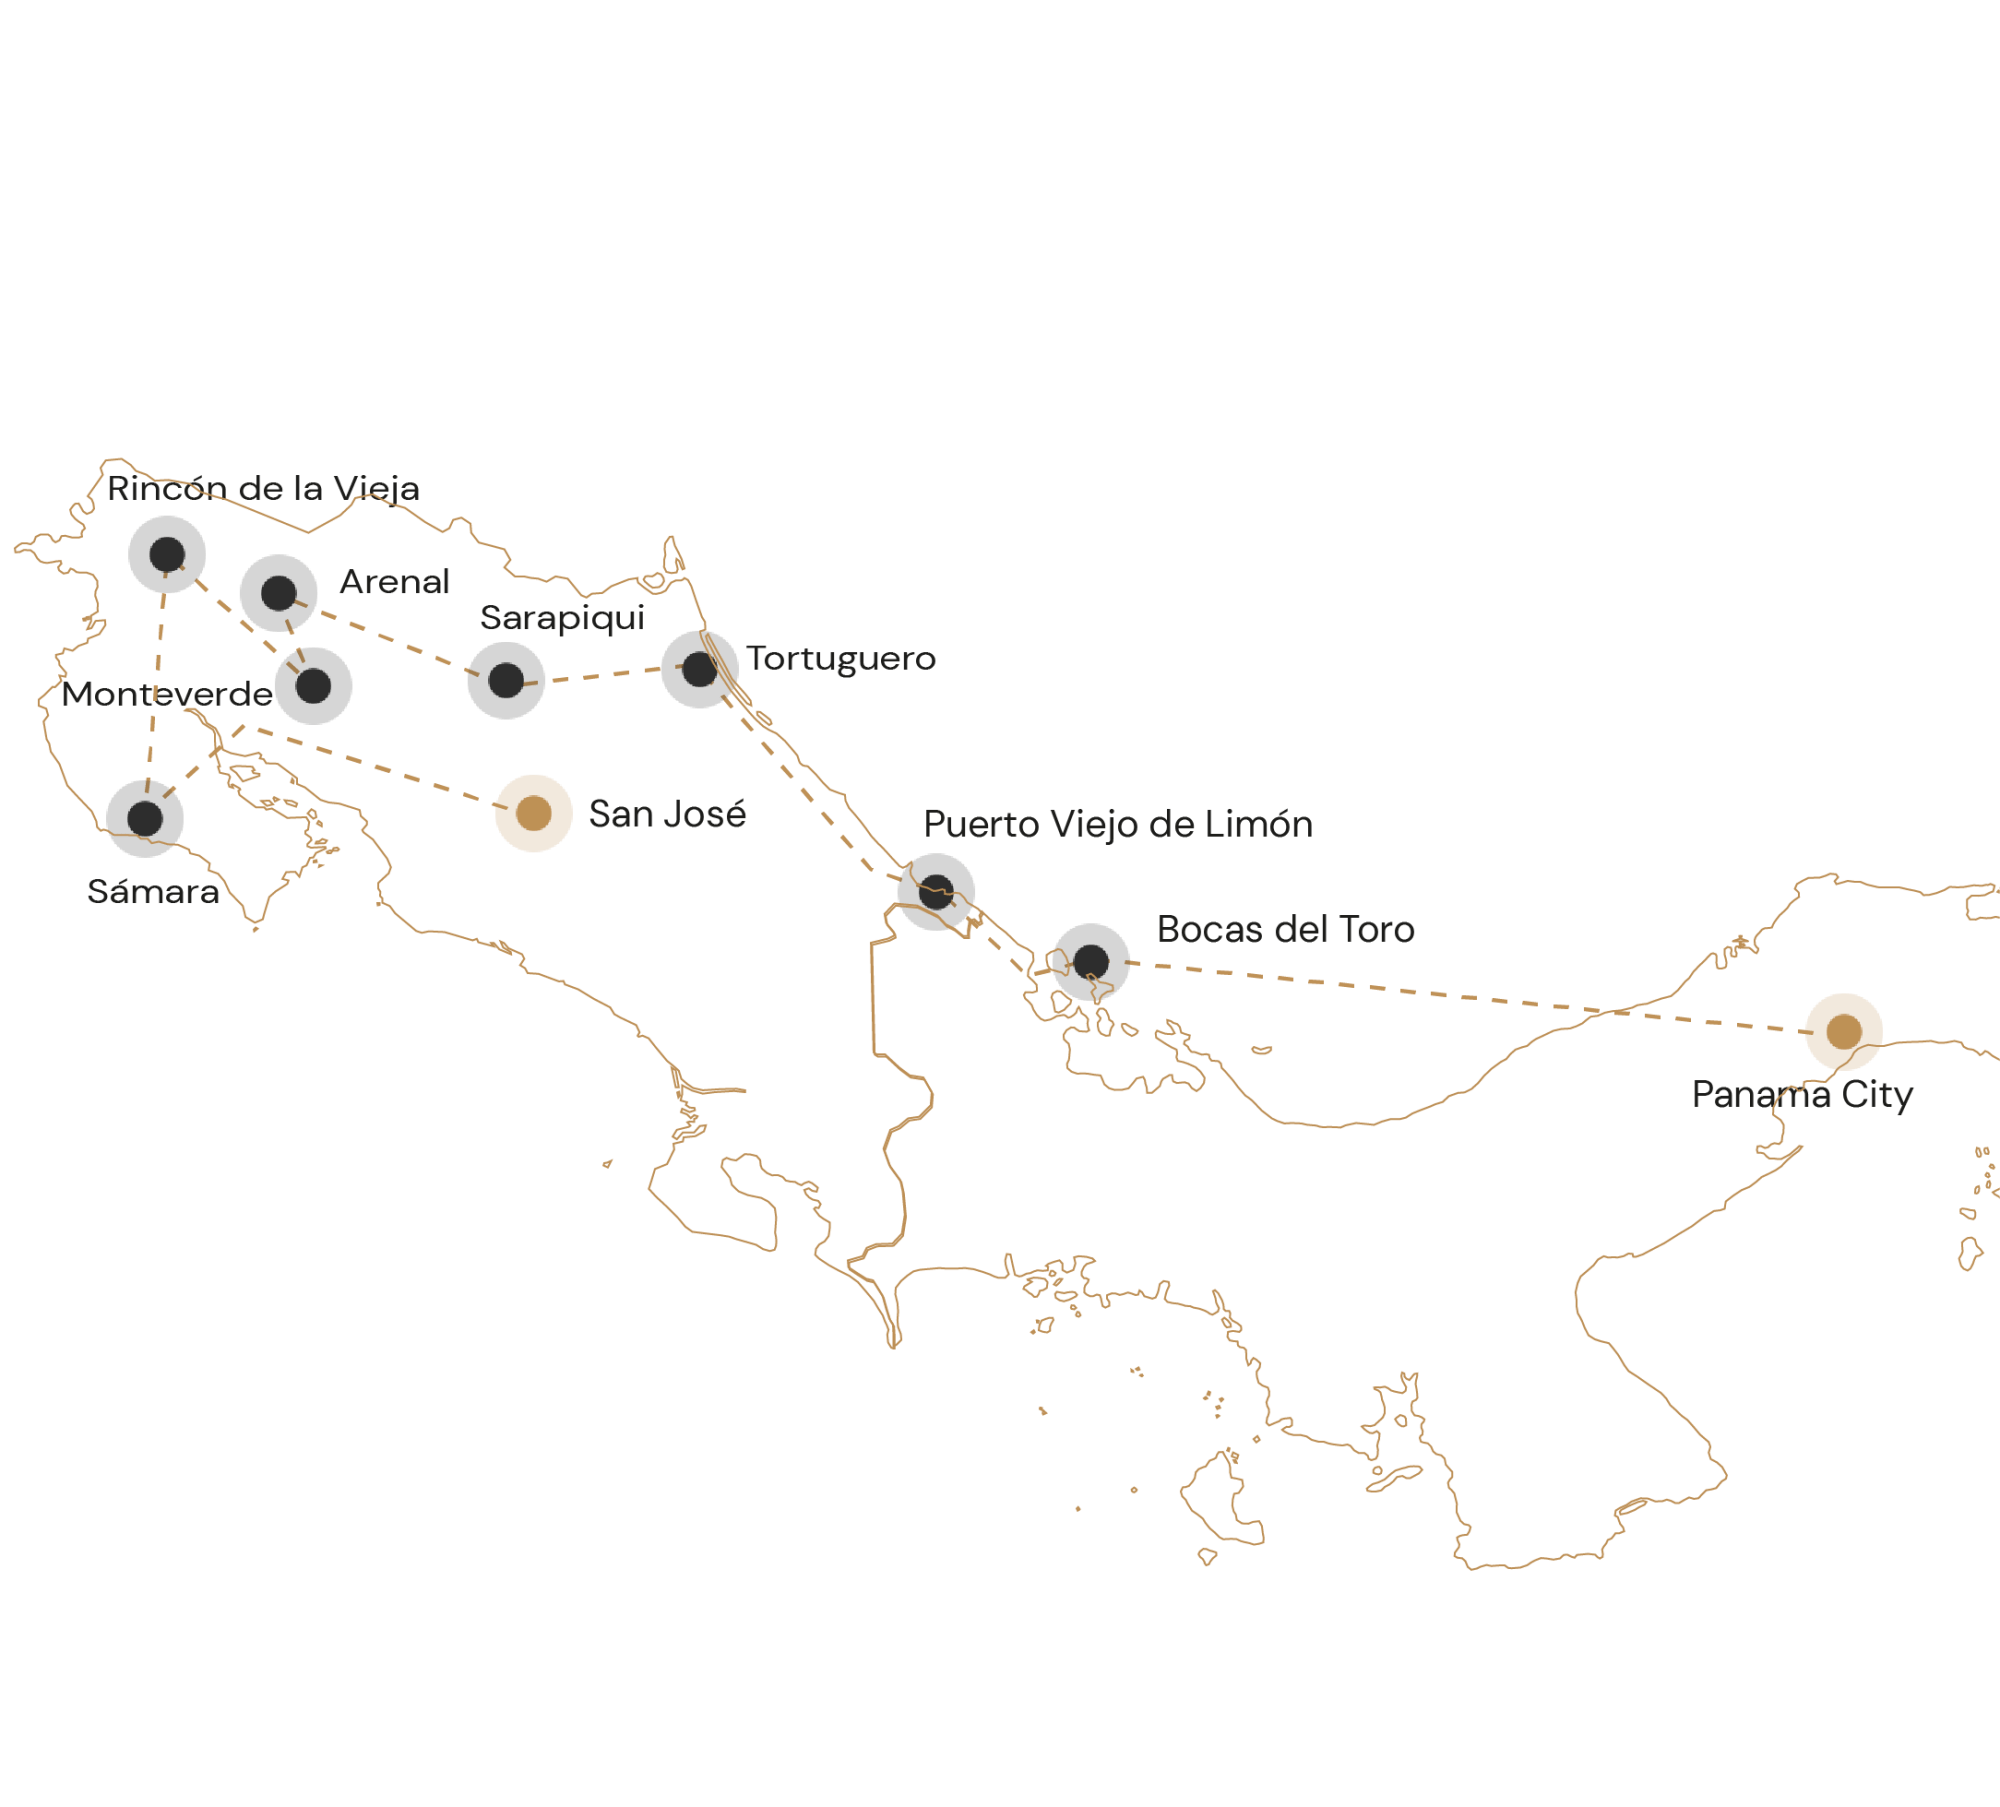 Route op ontdekkingsreis door costa rica panama